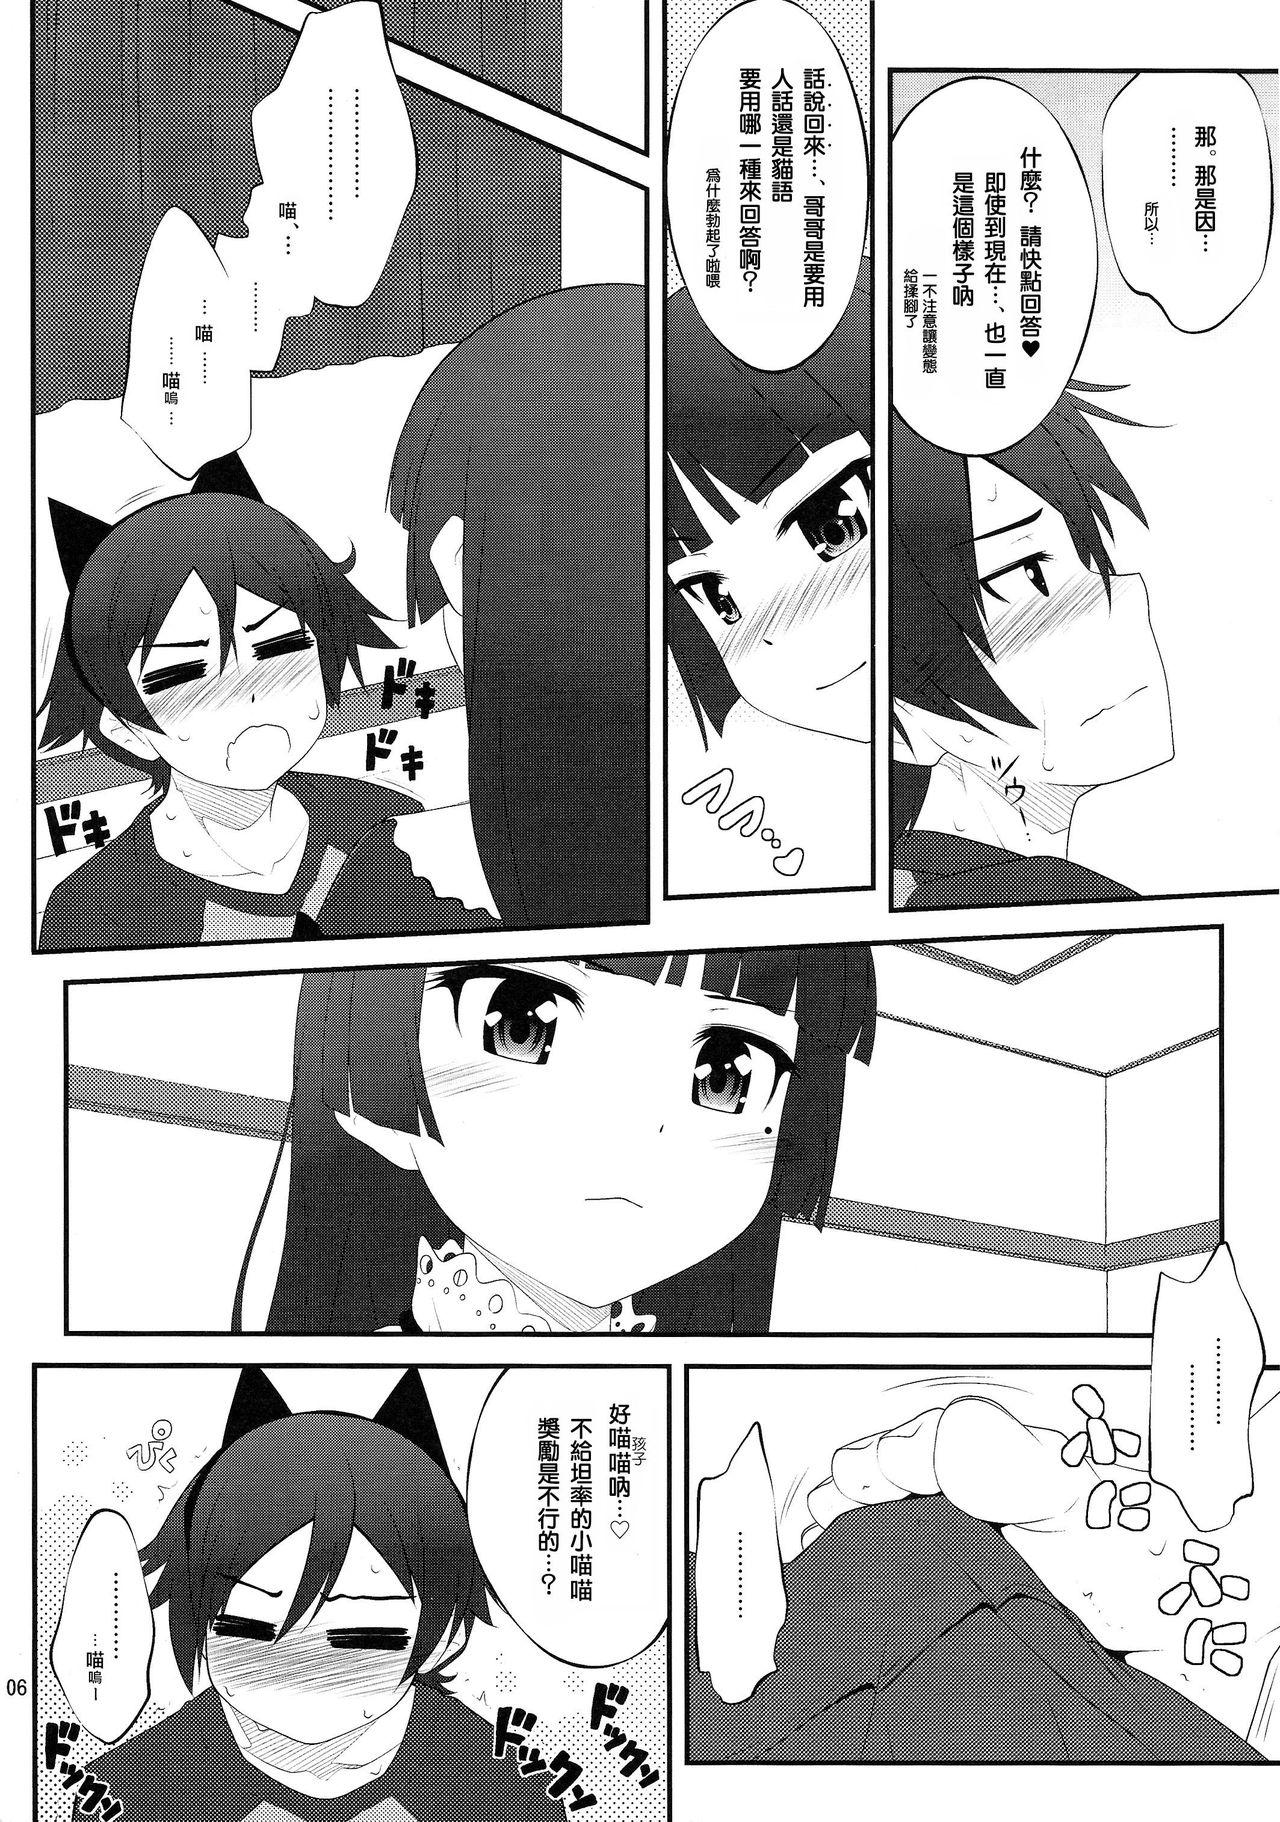 Rough Sex Nii-san, Ashi Monde Choudai After - Ore no imouto ga konna ni kawaii wake ga nai Parties - Page 6